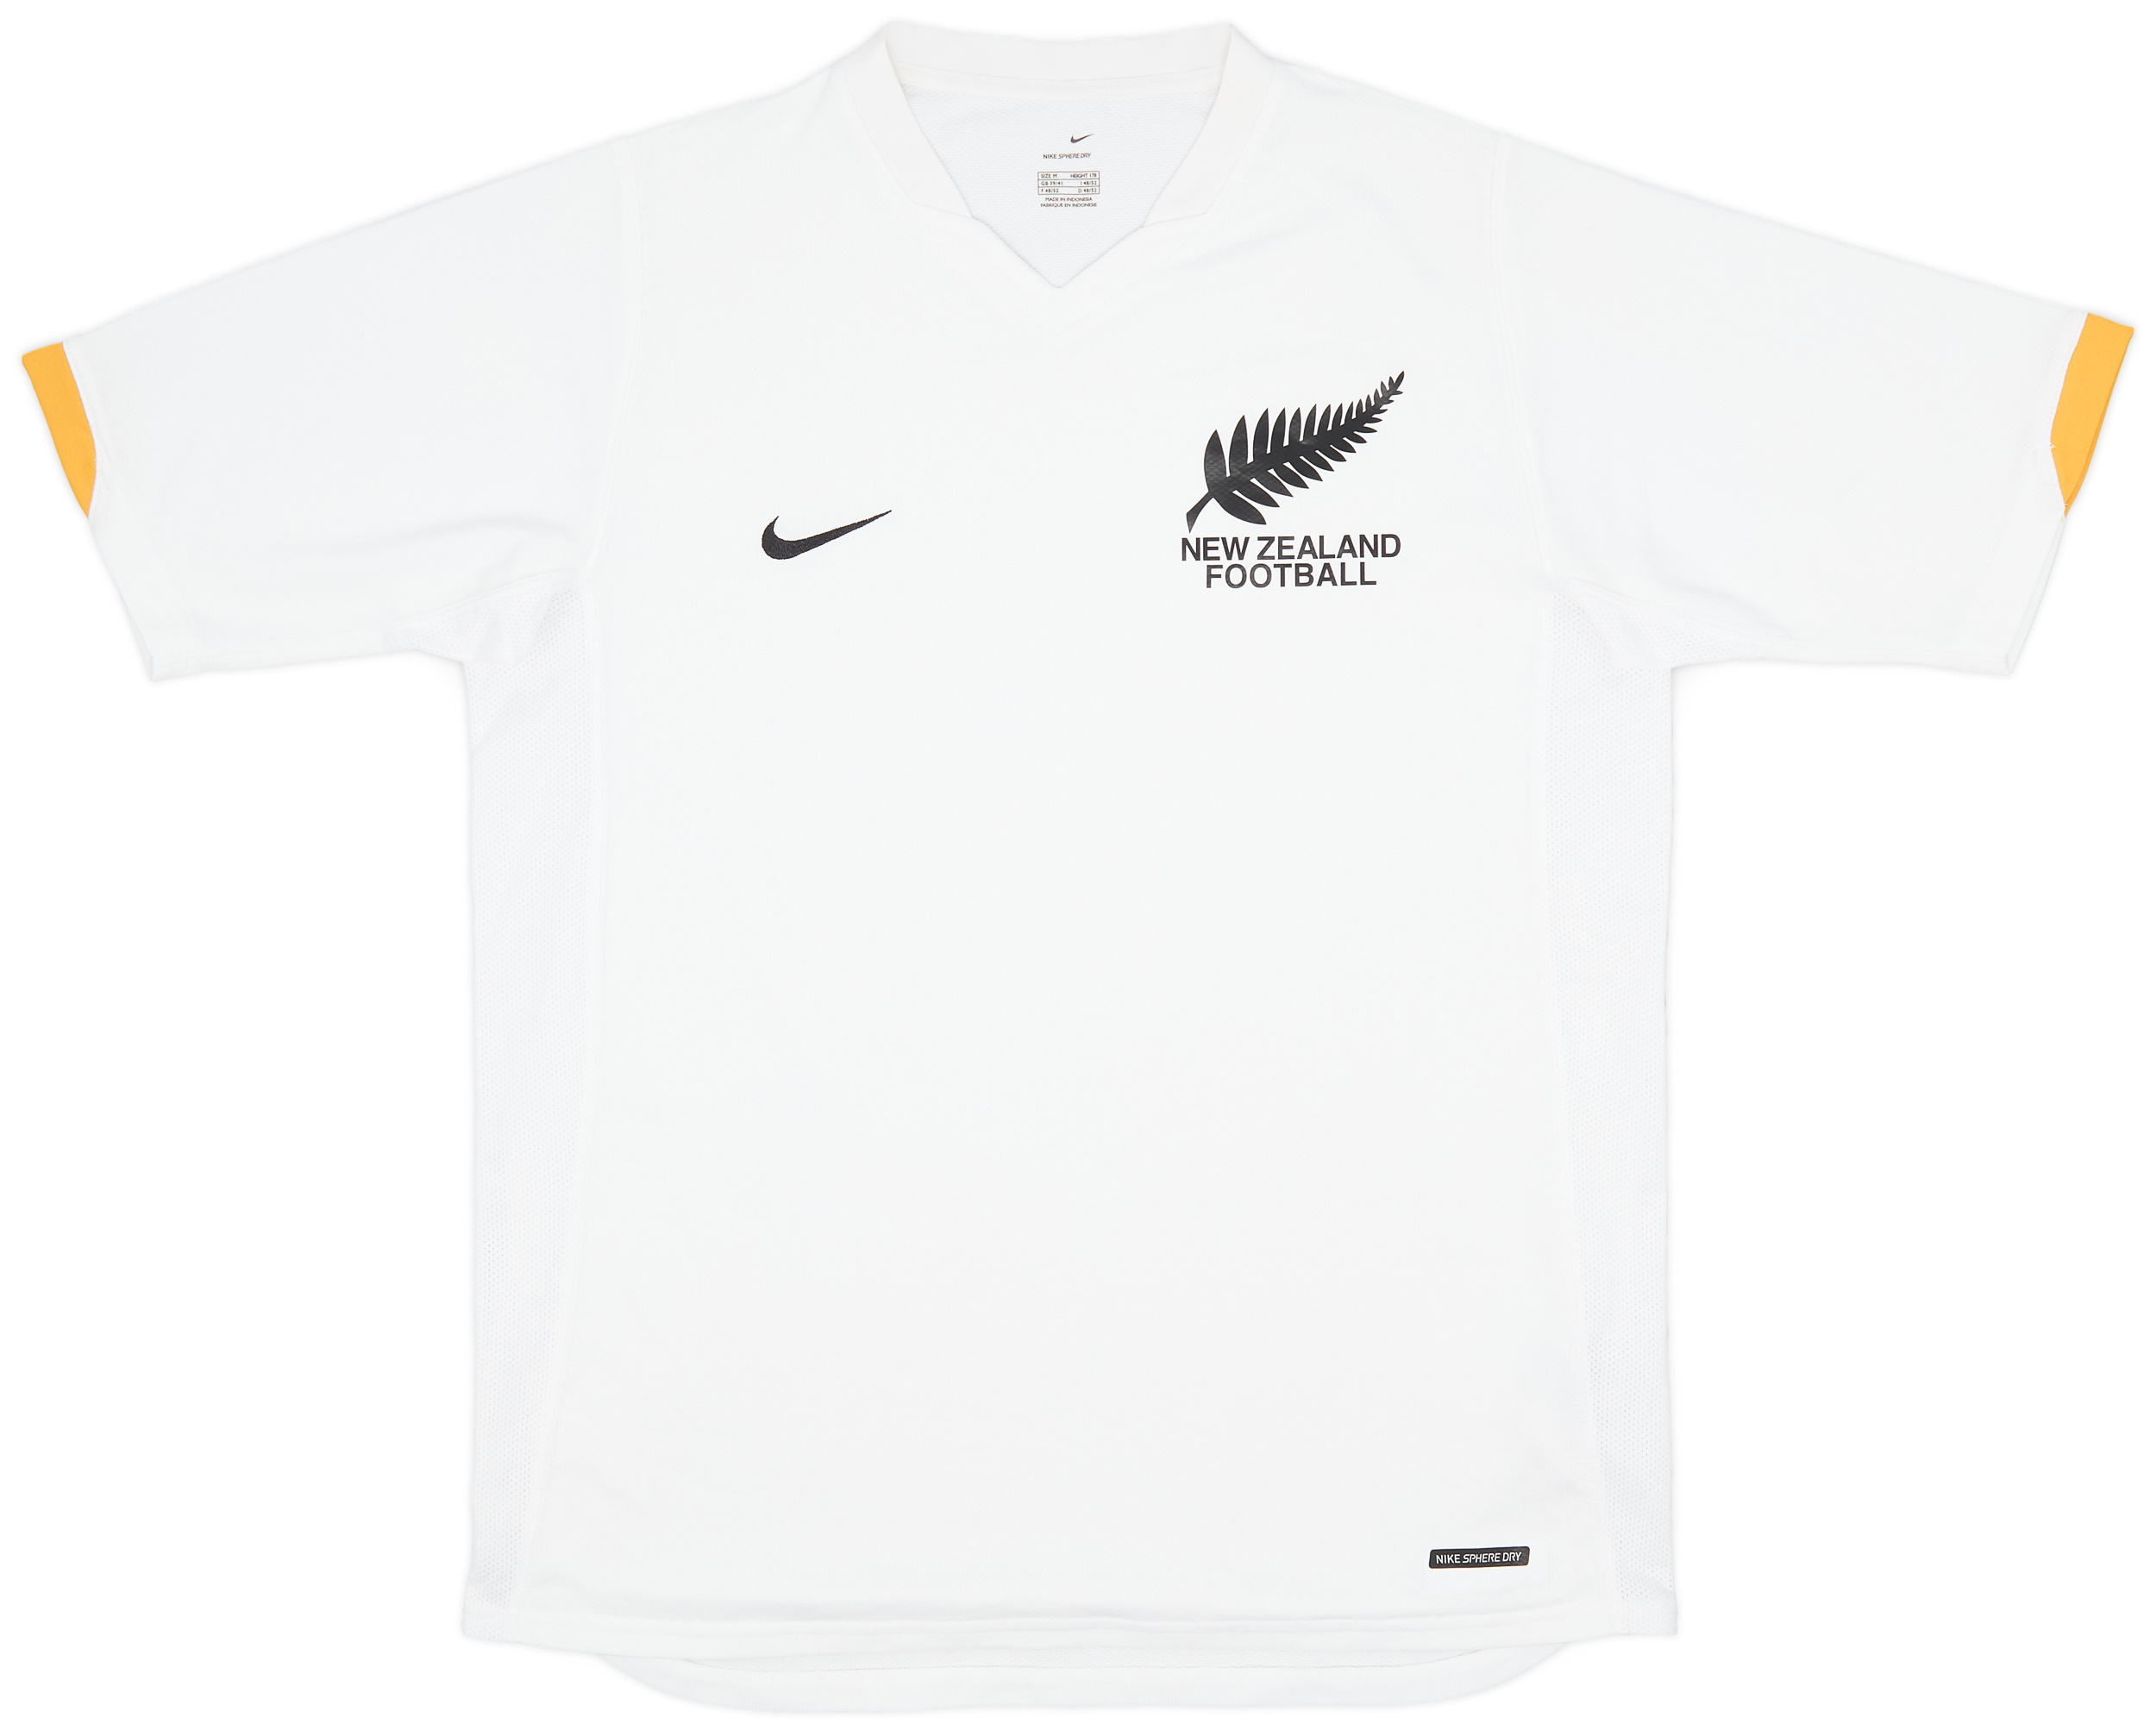 2006-07 New Zealand Home Shirt - 9/10 - ()